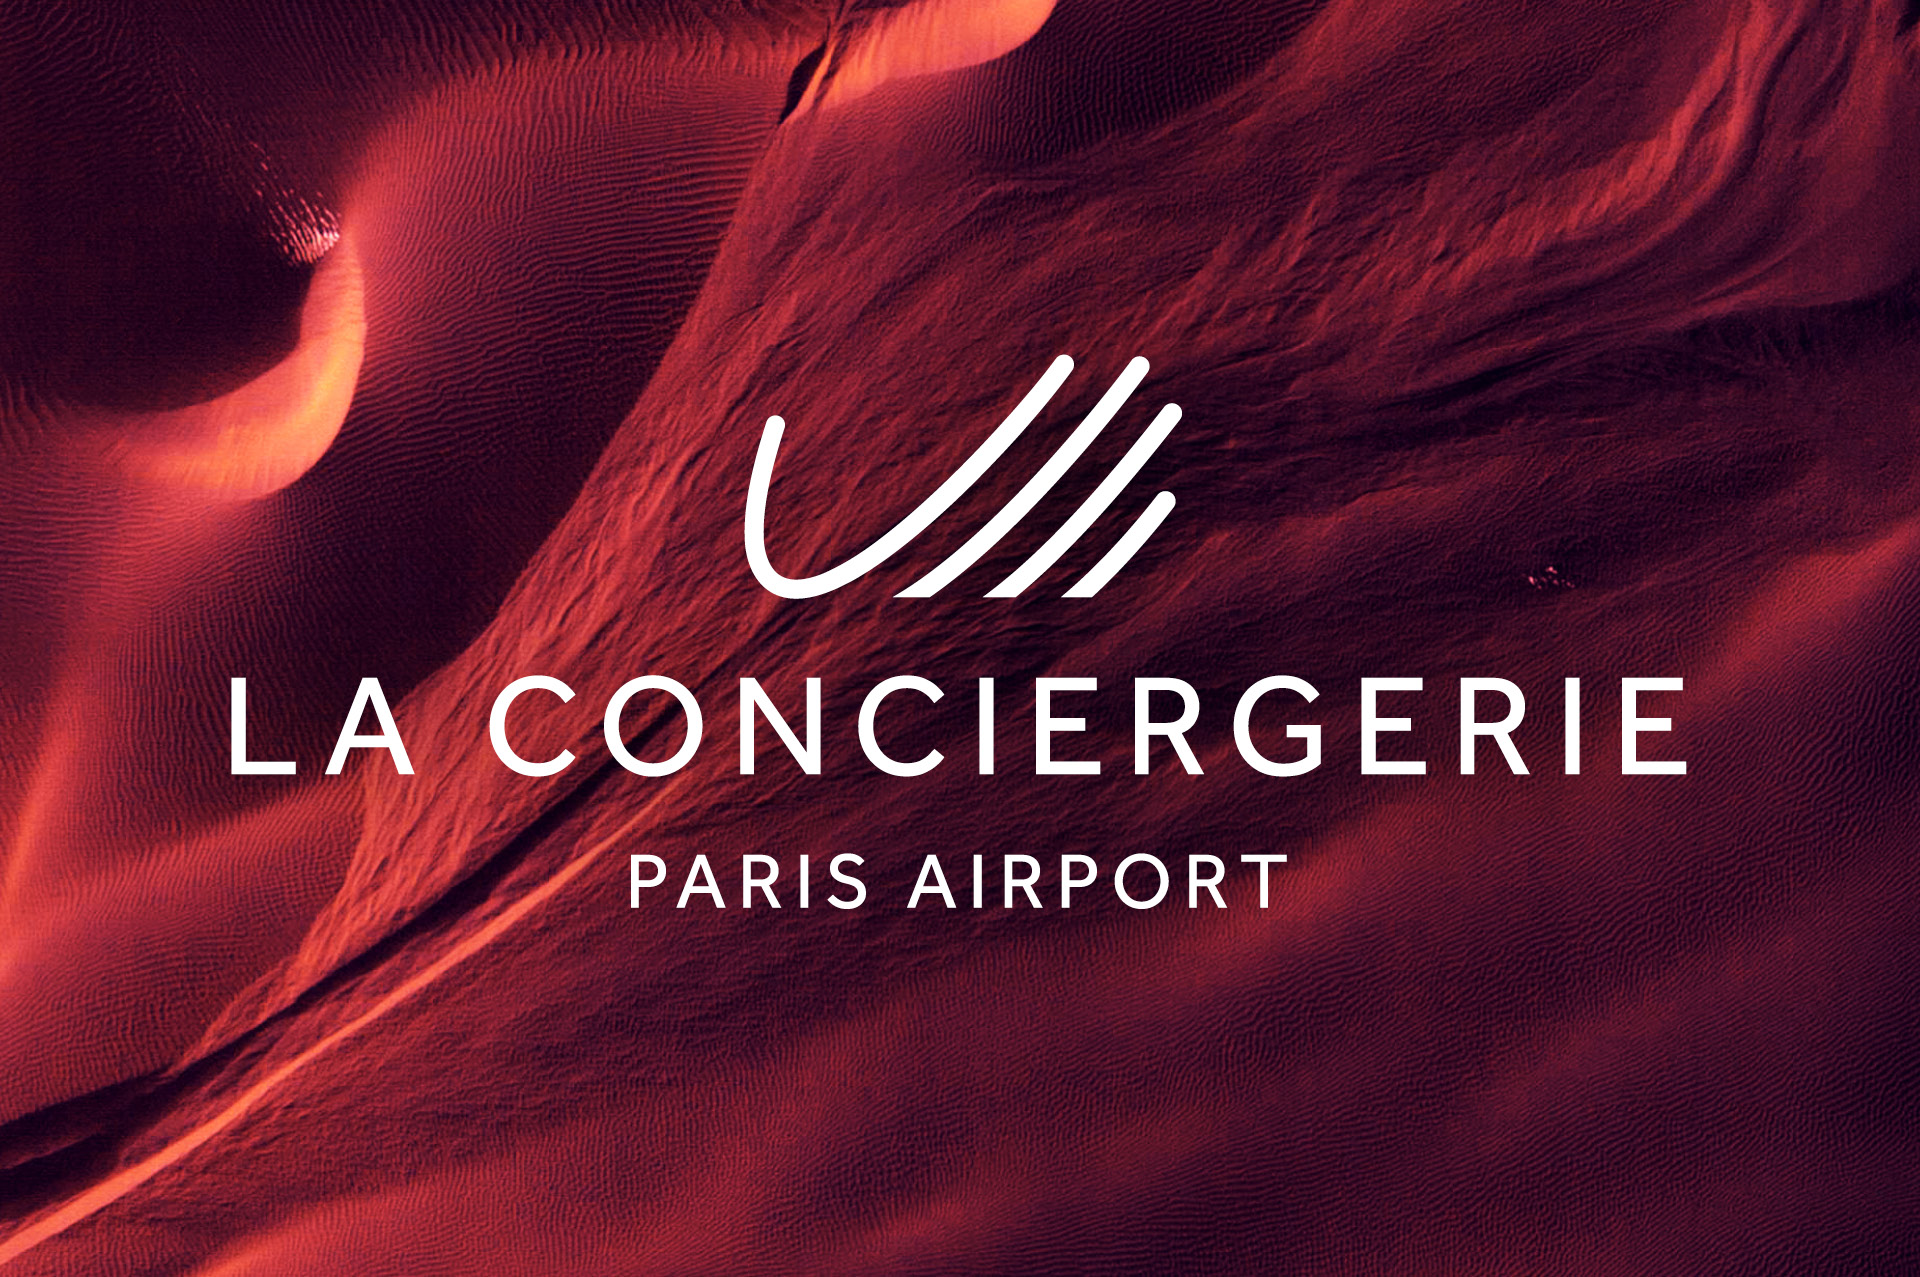 La Conciergerie Paris Airport